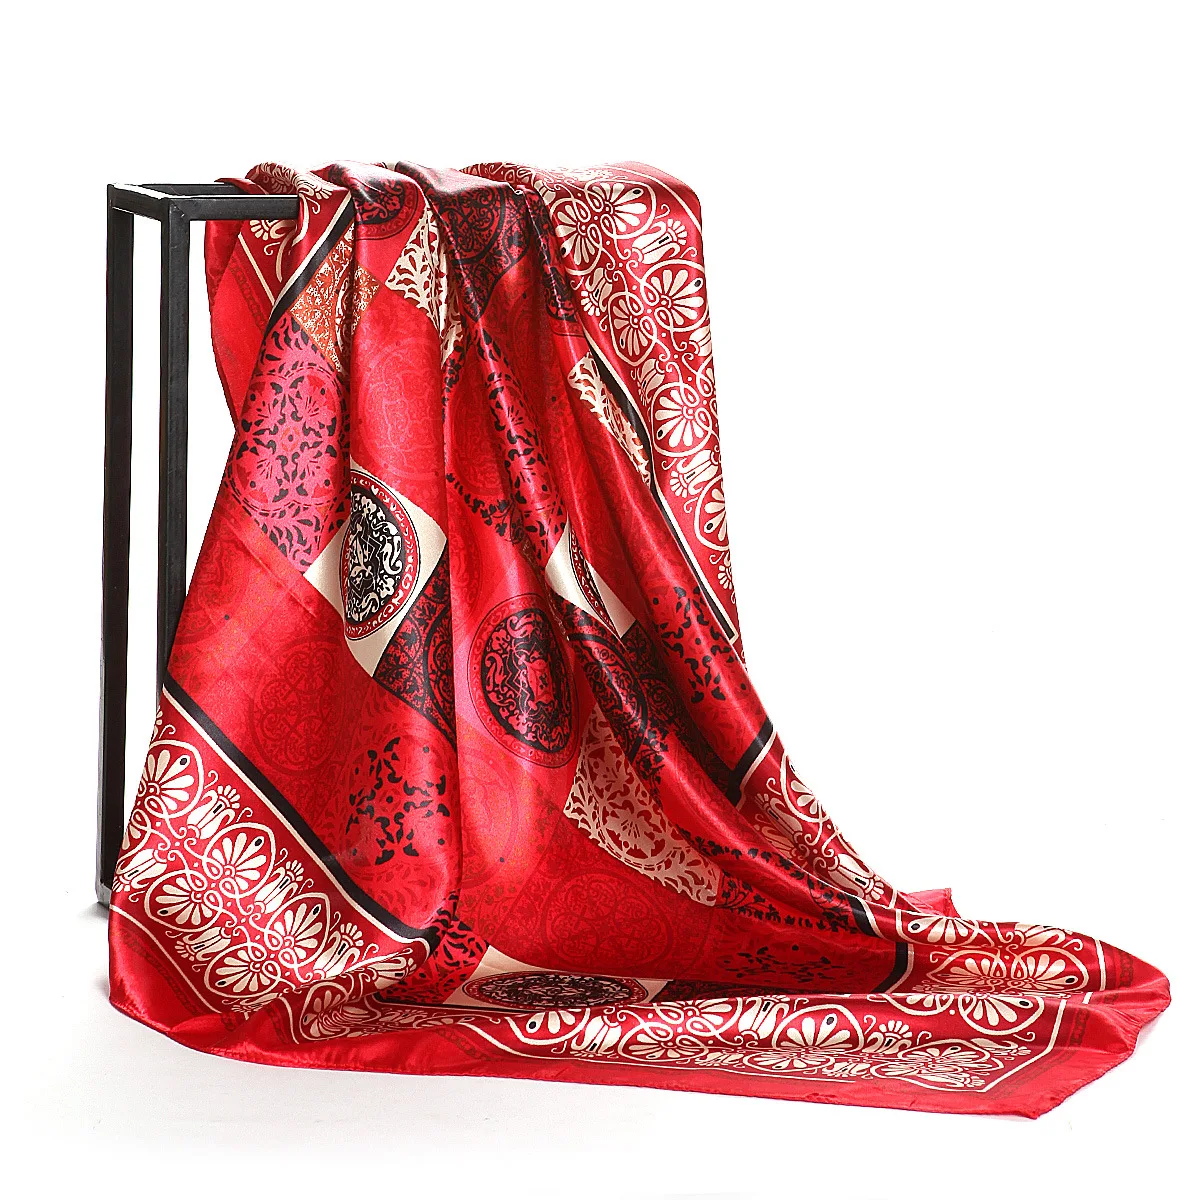 Luksus mærke silke tørklæder retro stil geometriske totem silke trykt silke tørklæde 90cm stort kvadratisk tørklæde kvinders tørklæde